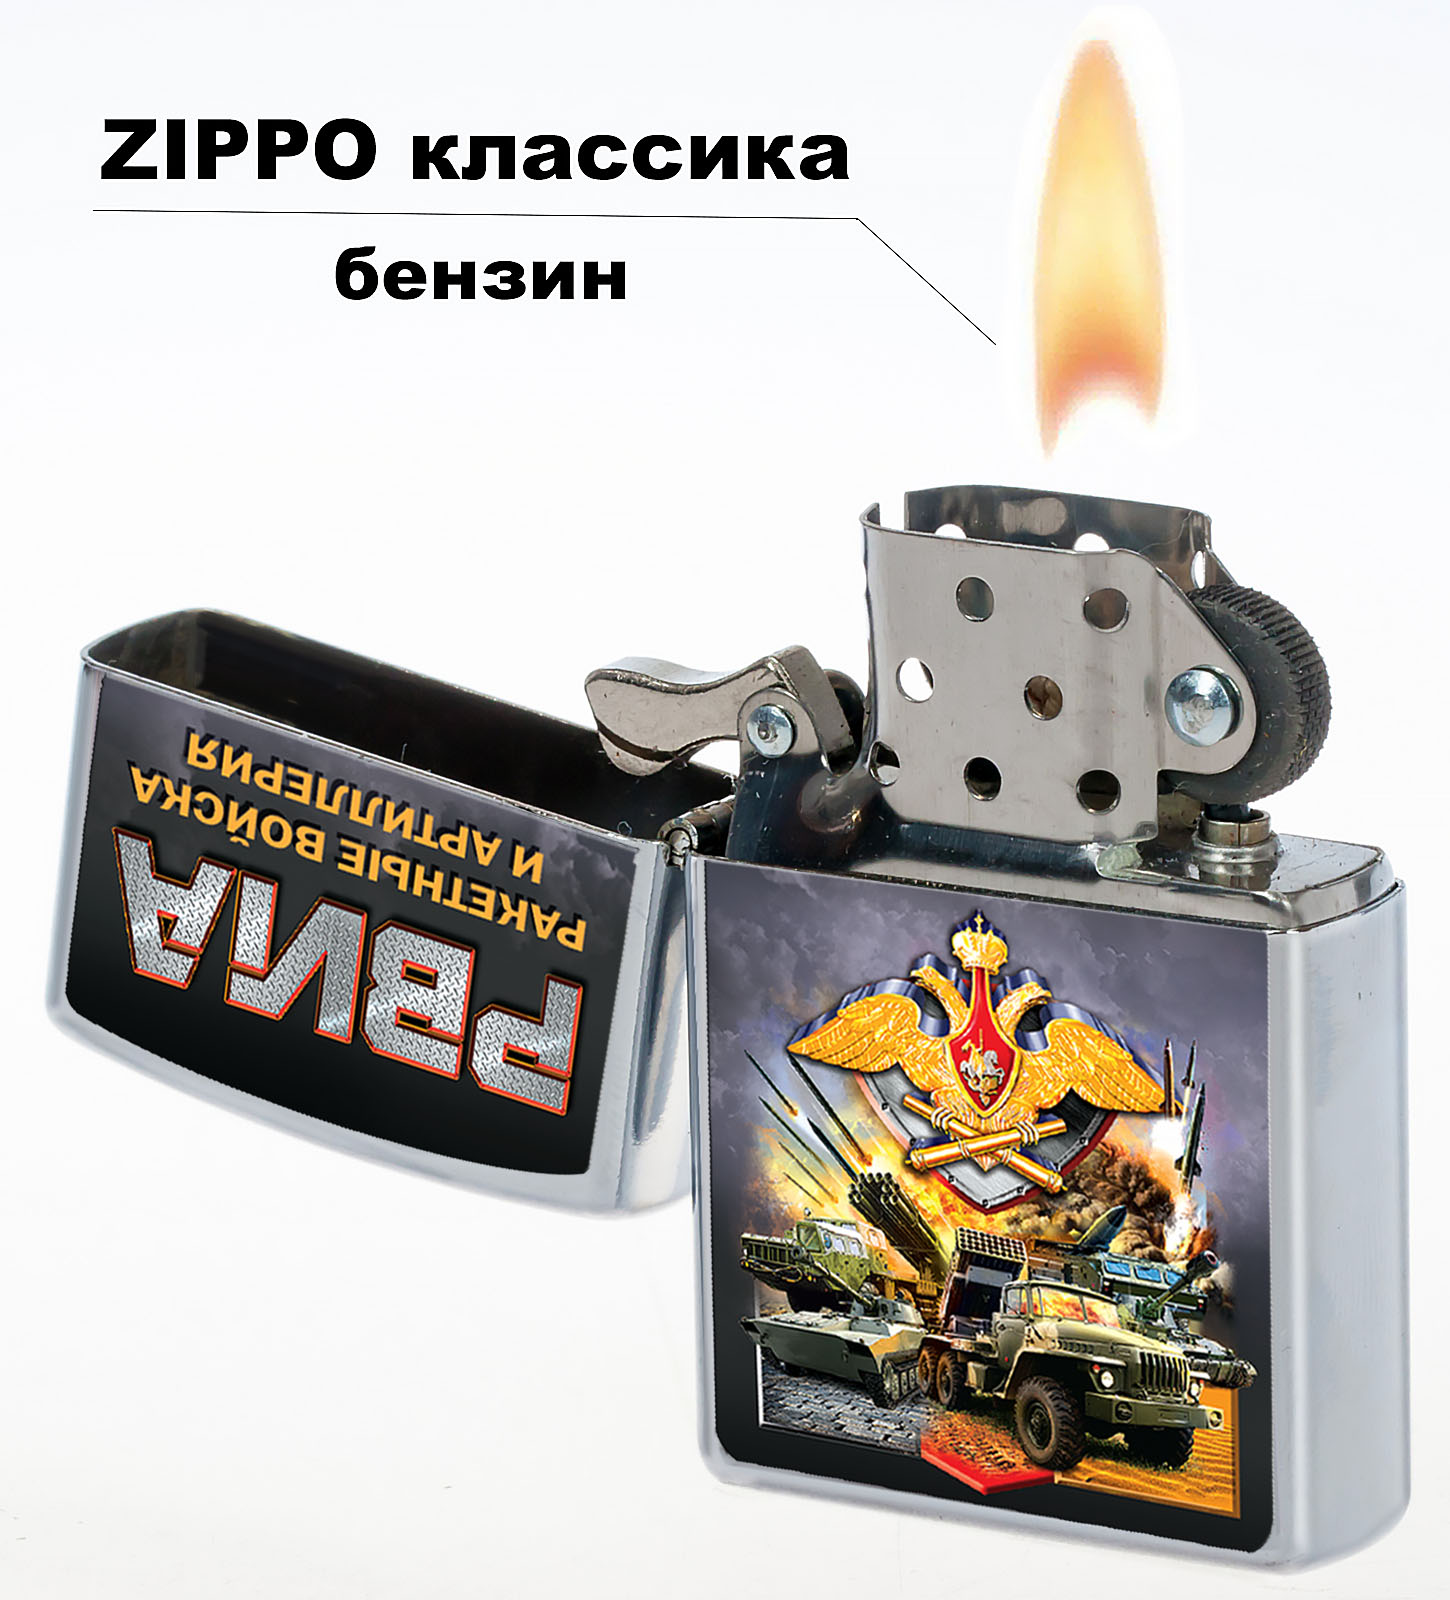 Сувенирная зажигалка РВиА в подарок военнослужащим и ветеранам!